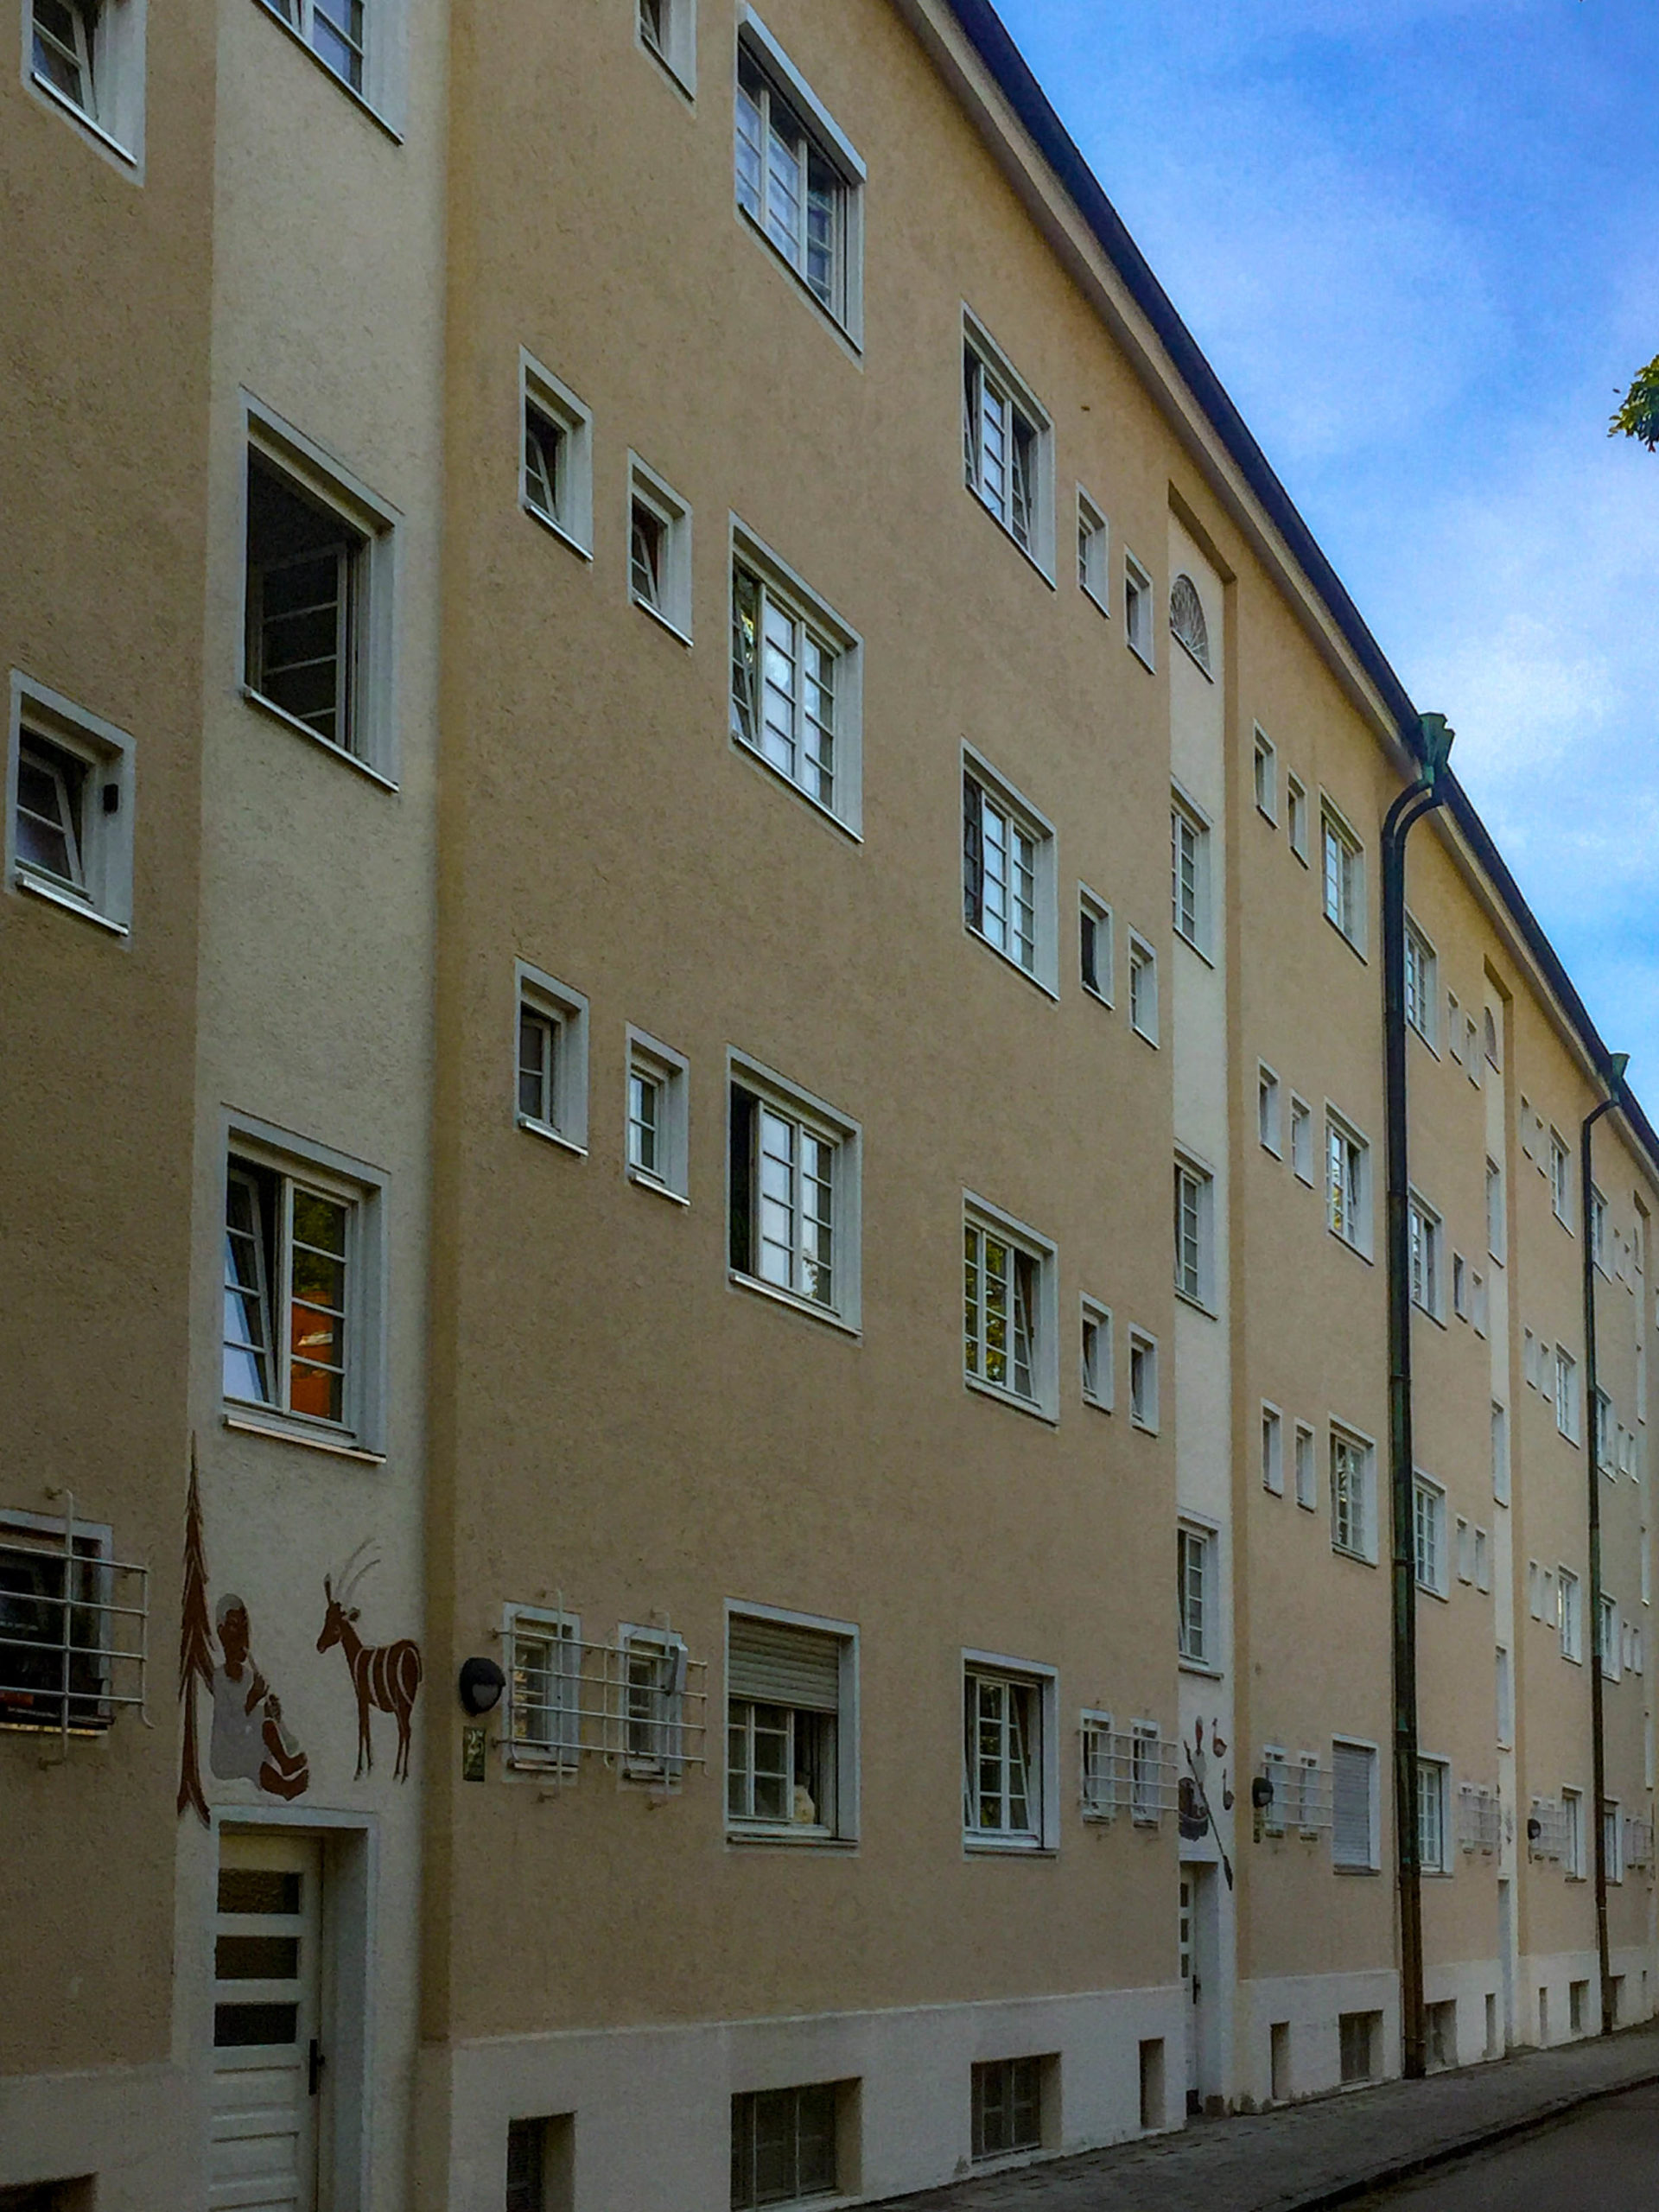 Stockwerk Estate, 1927-1930. Architects: Carl Jäger, Hanna Löv et al.